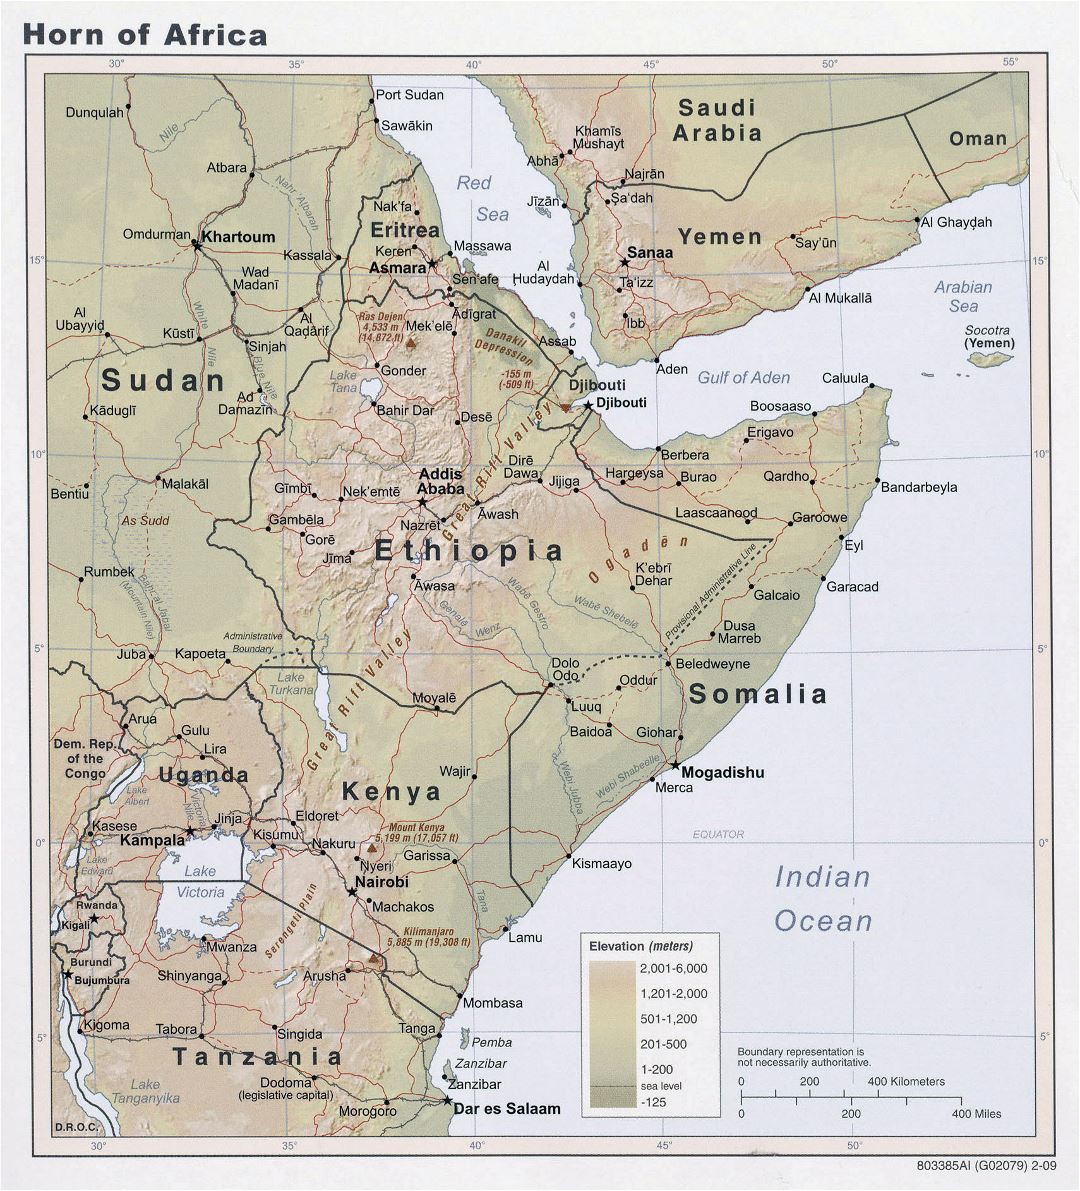 Большая подробная карта высот Африканского Рога - 2009